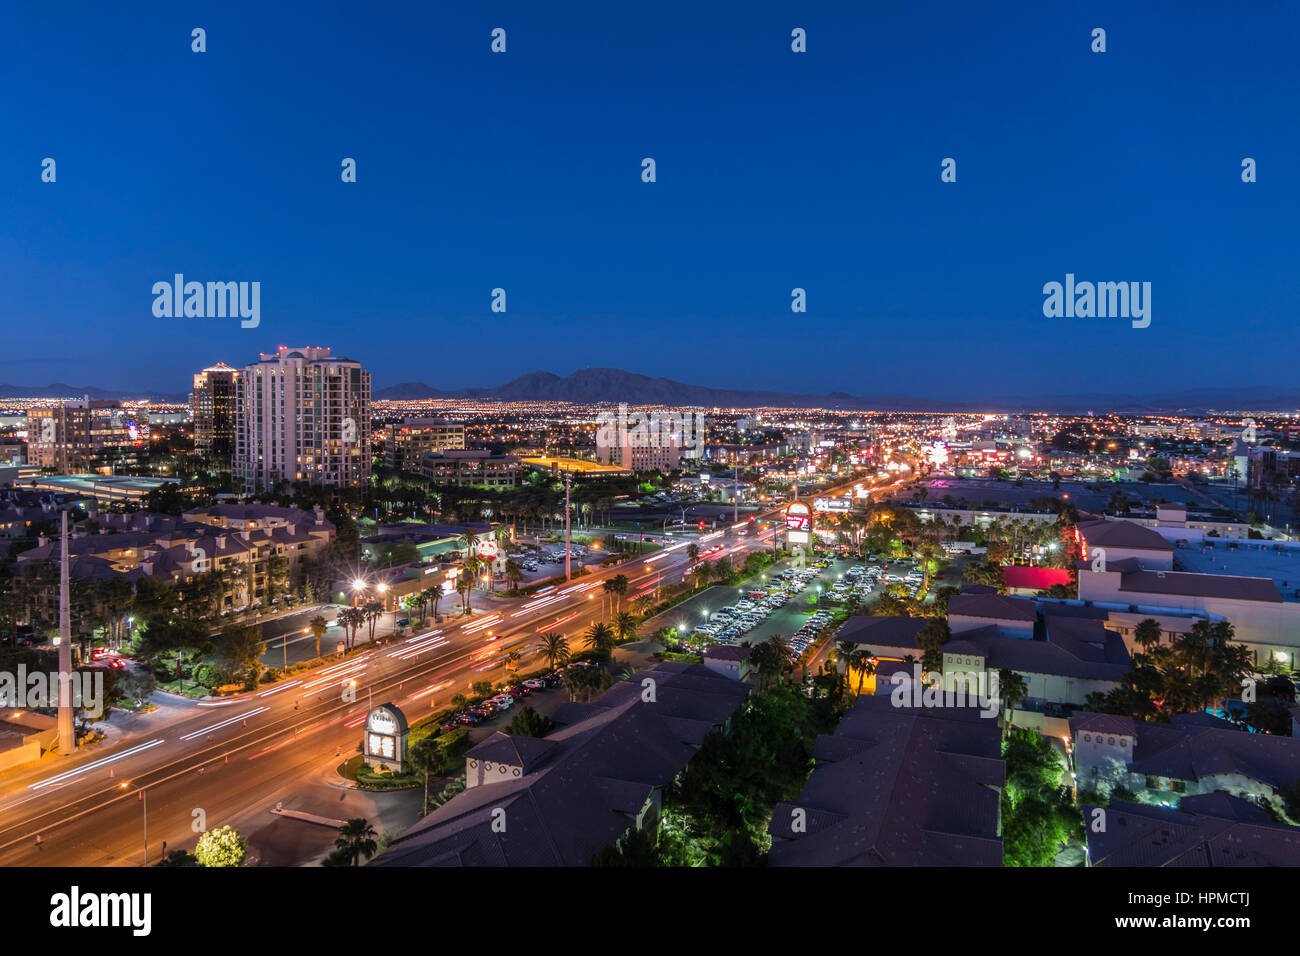 Las Vegas, Nevada, USA - 9 mai 2016 : Crépuscule vue vers le bas Flamingo Road à l'est de la bande de Las Vegas. Banque D'Images